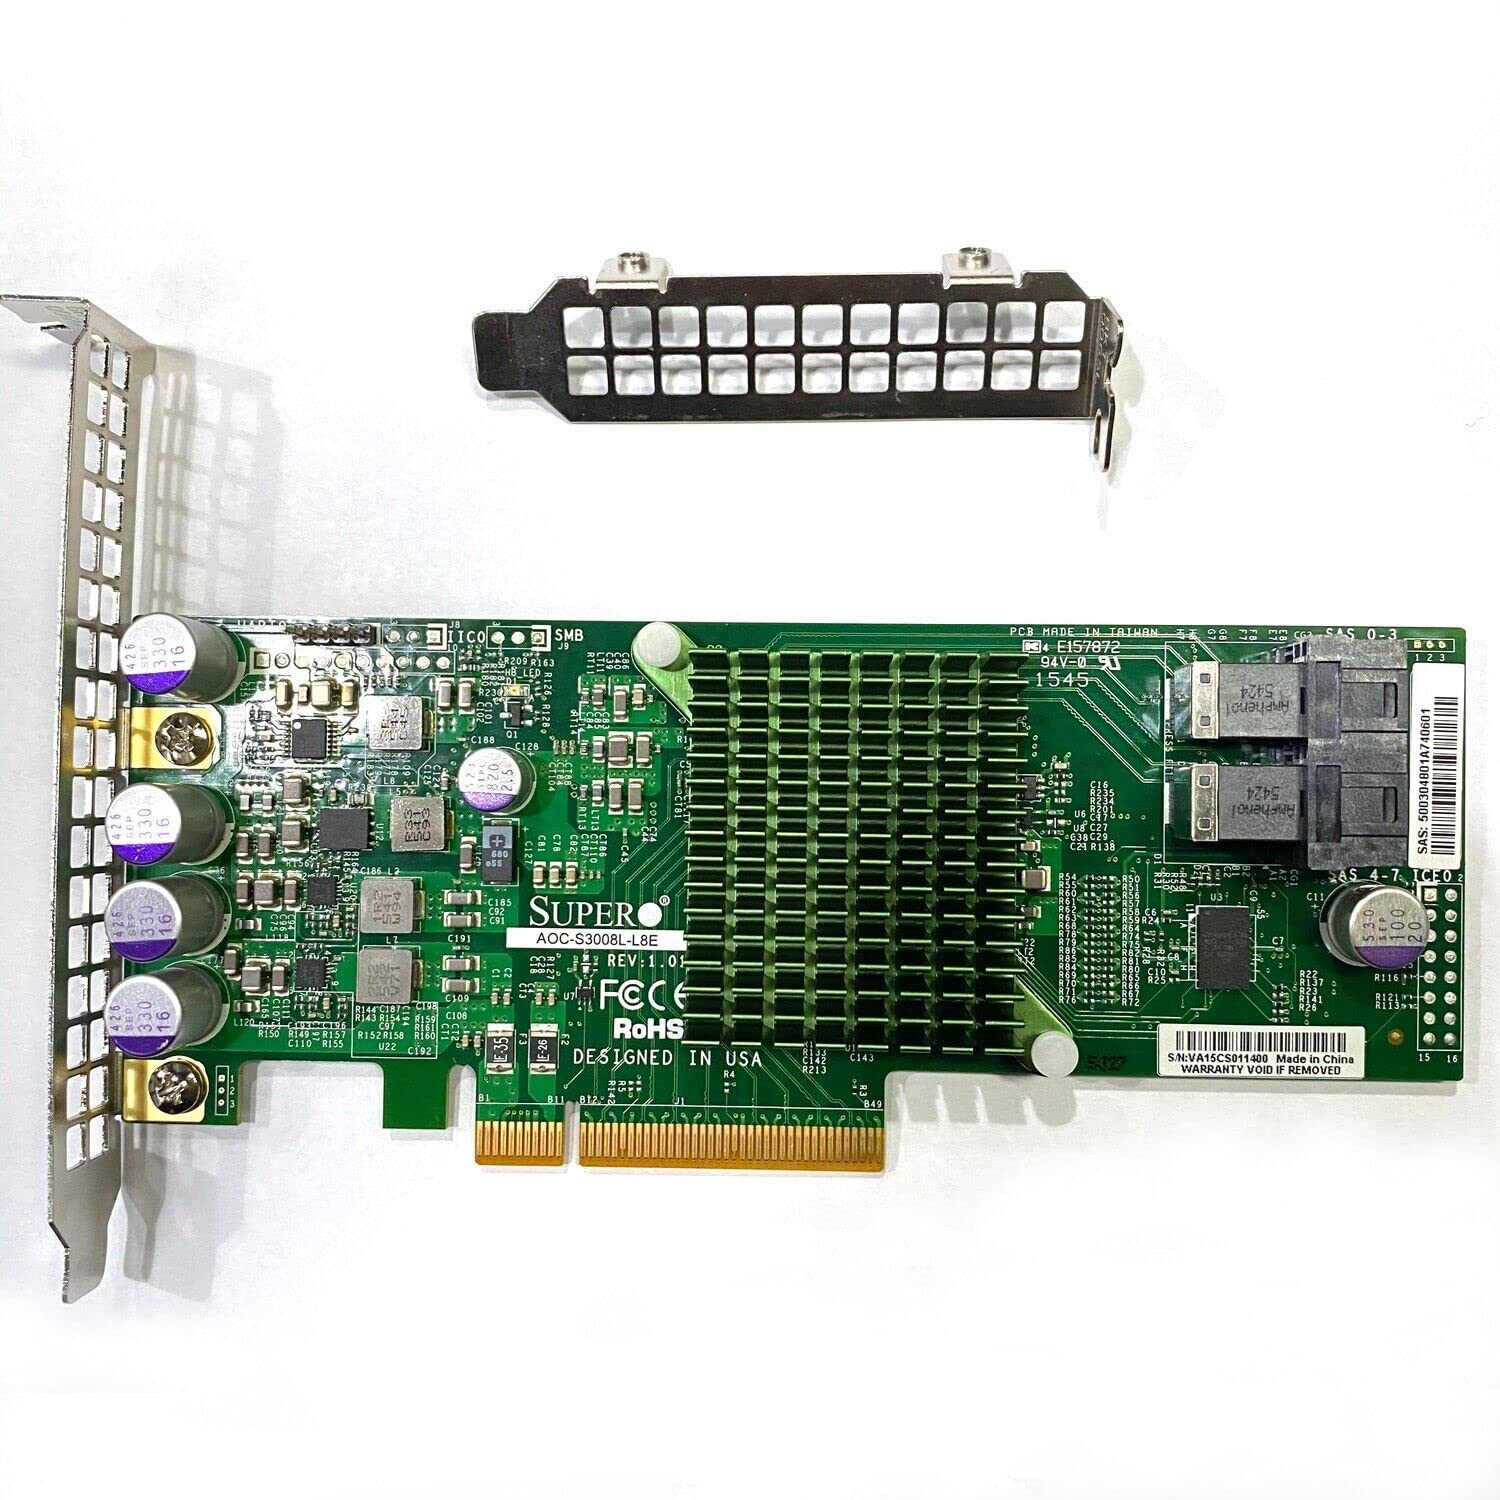 SXTAIGOOD AOC-S3008L-L8E SAS 8-Port 12Gb/s PCIe HBA IT-Mode w/Bracket